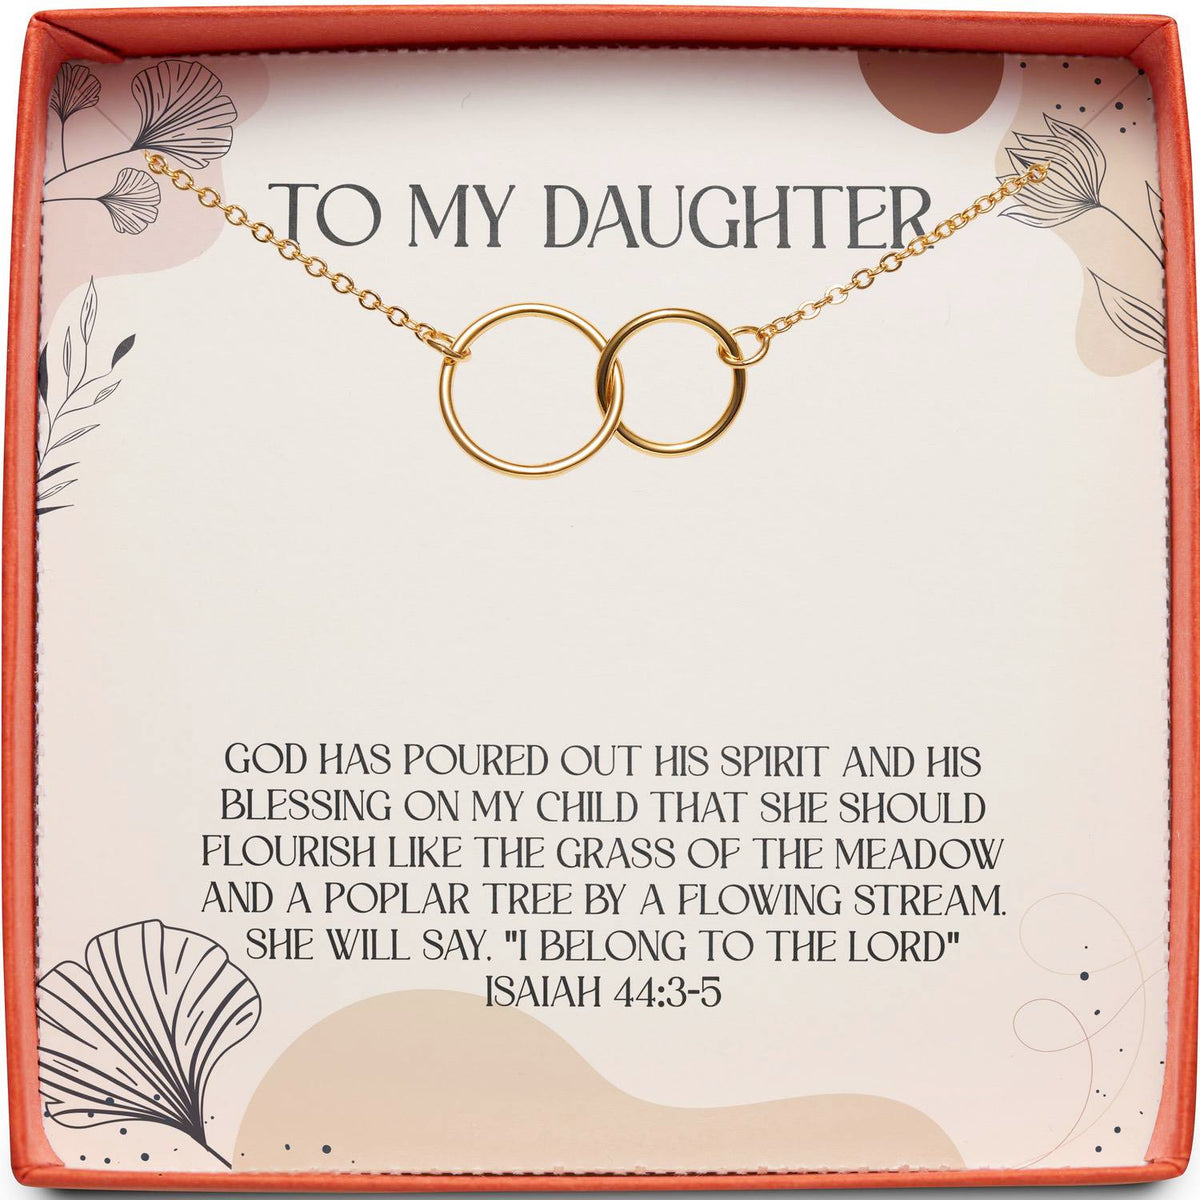 To My Daughter | Isaiah 44:3-5 | Interlocking Circles